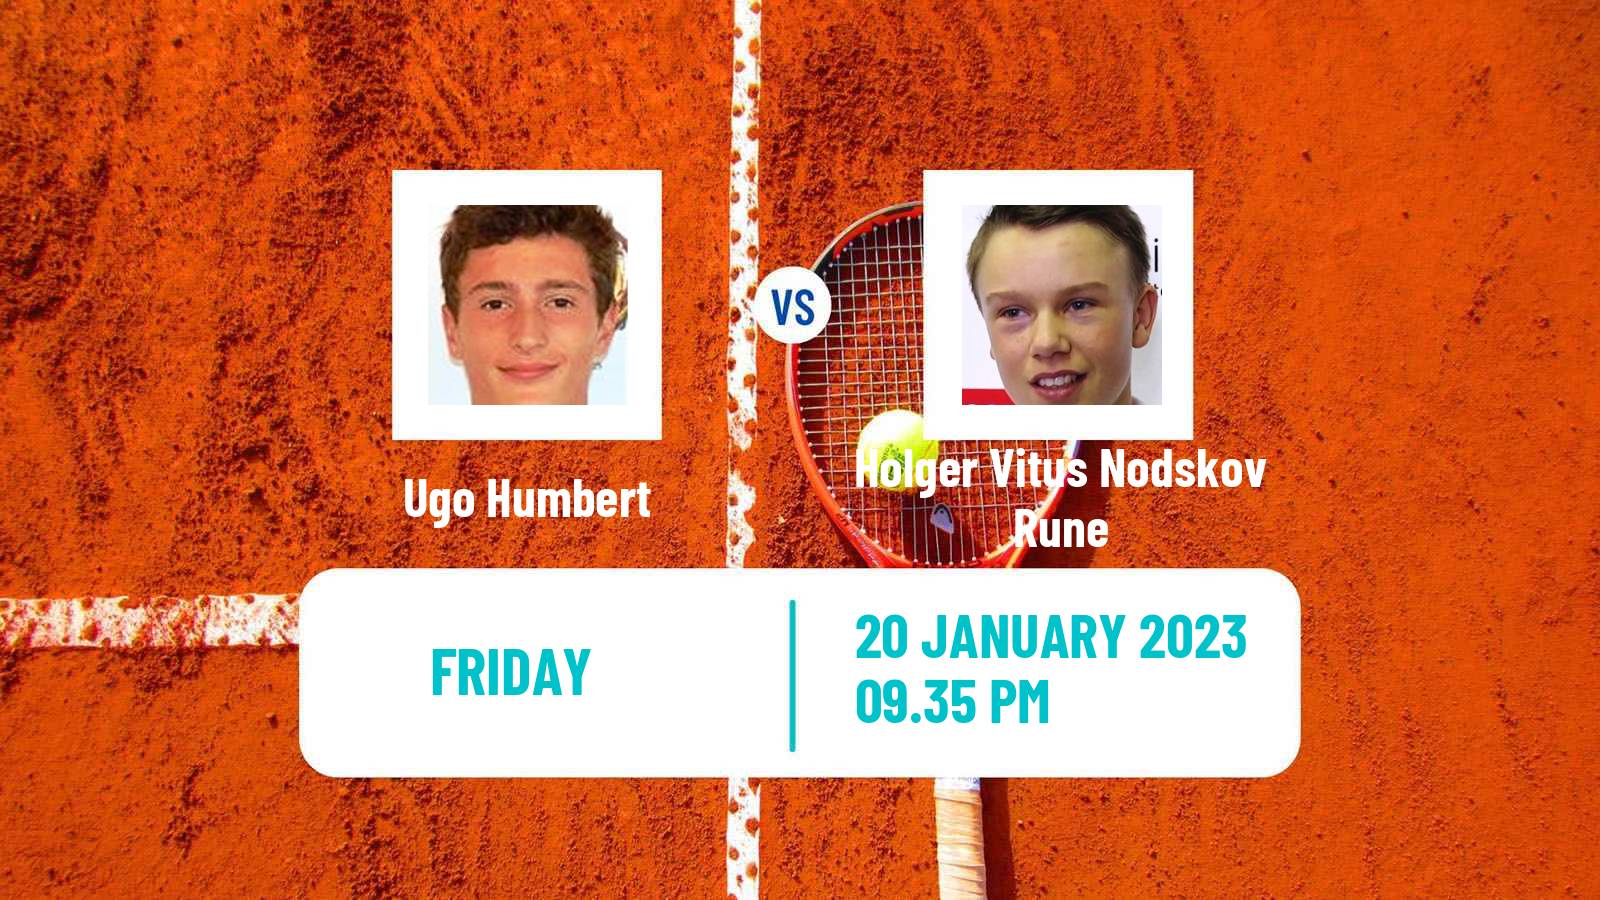 Tennis ATP Australian Open Ugo Humbert - Holger Vitus Nodskov Rune